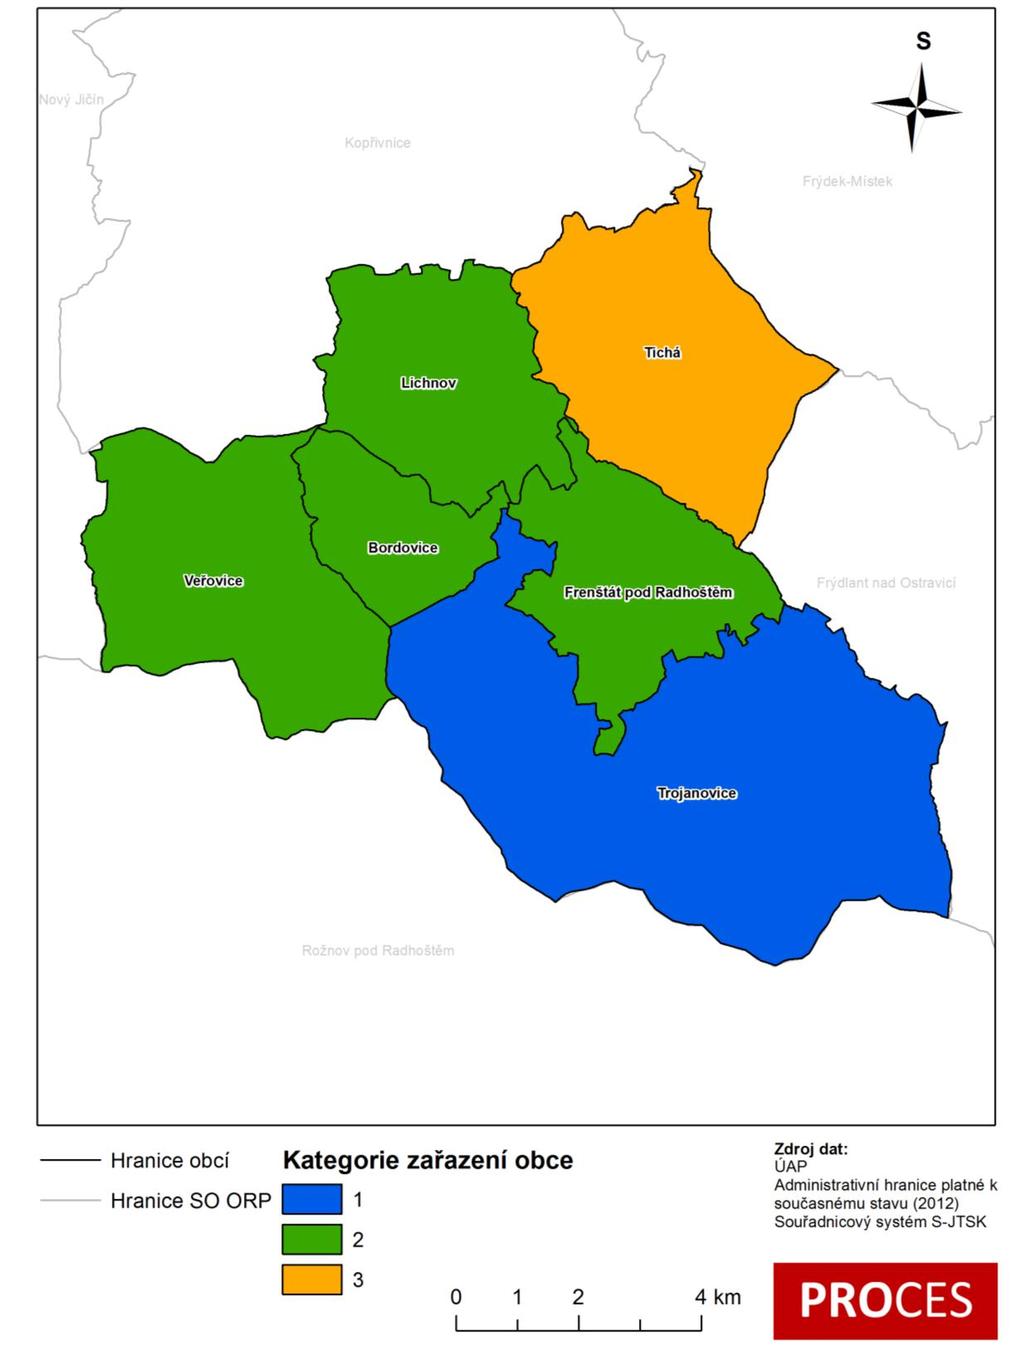 Centrum pro rozvoj obcí a regionů, s. r. o. vypracován níže uvedený kartogram. Zdůvodnění je uvedeno vždy při rozboru jednotlivých témat.